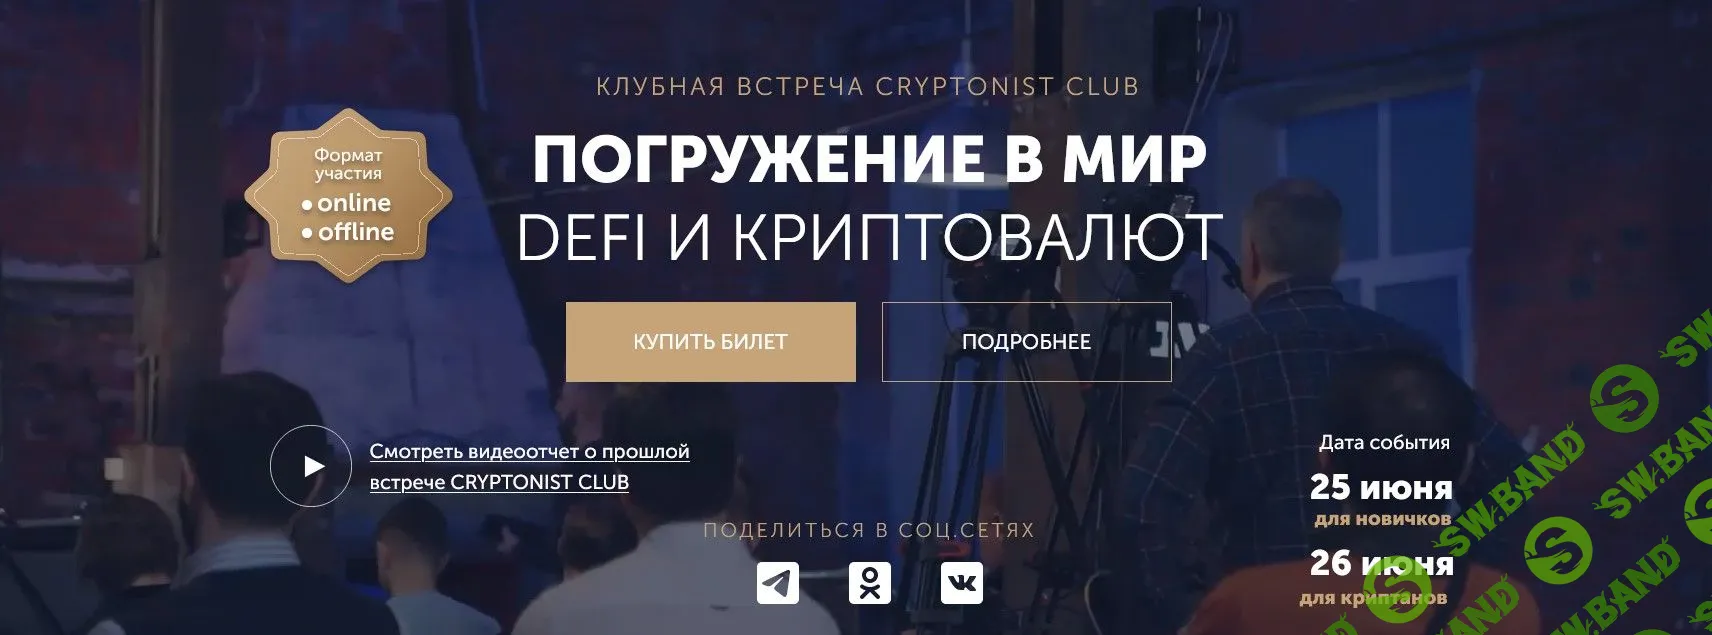 [Cryptonist Club] Погружение в мир DeFi и криптовалют (2022)